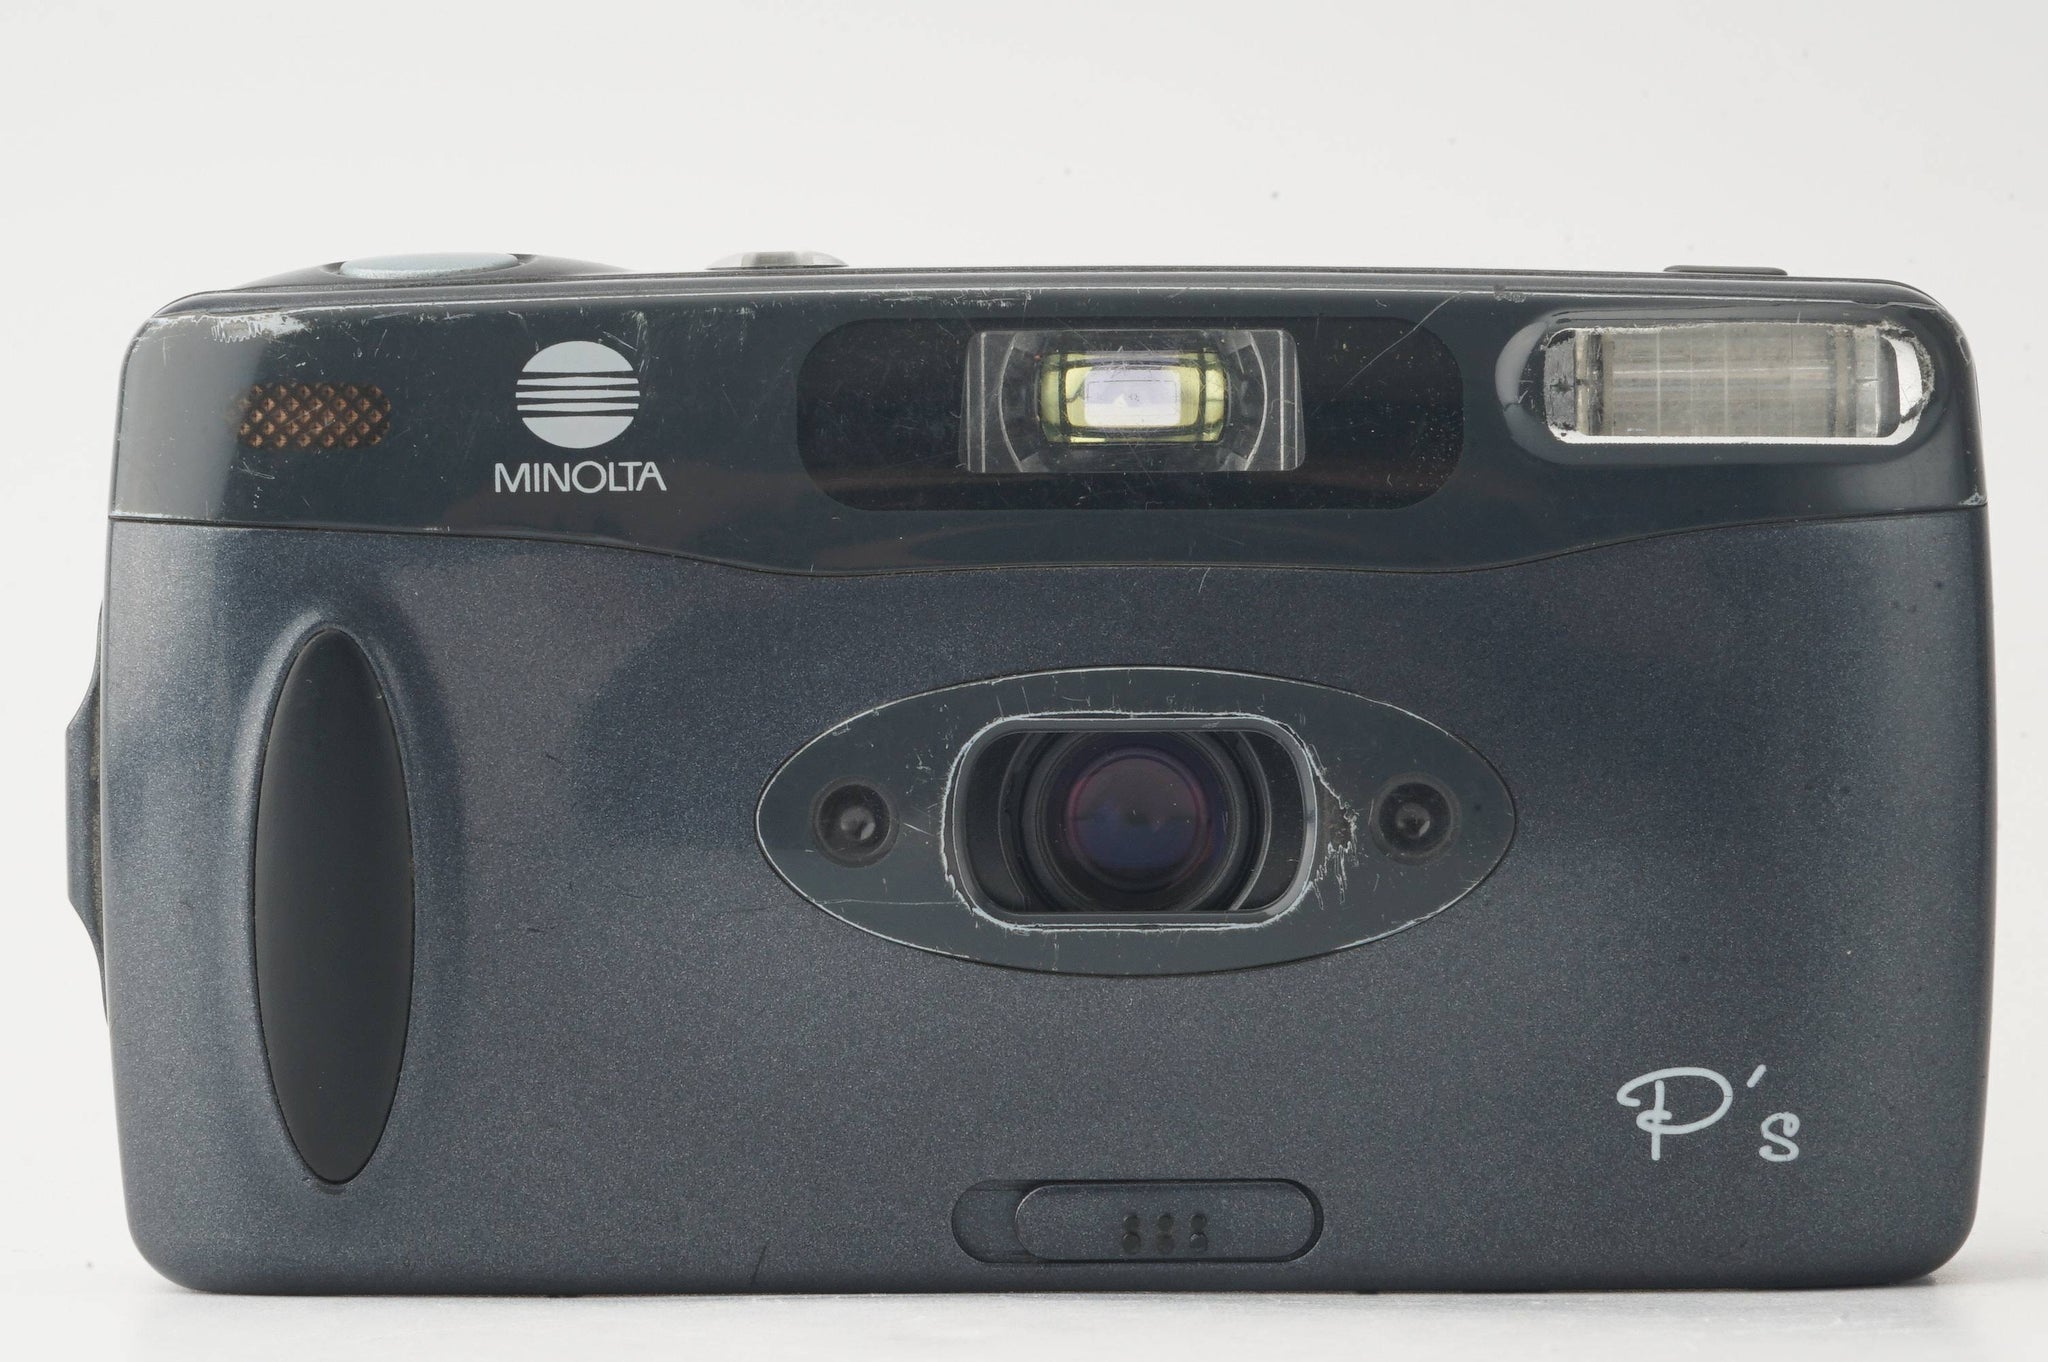 ミノルタ Minolta P's パノラマ専用 コンパクトフィルムカメラ 